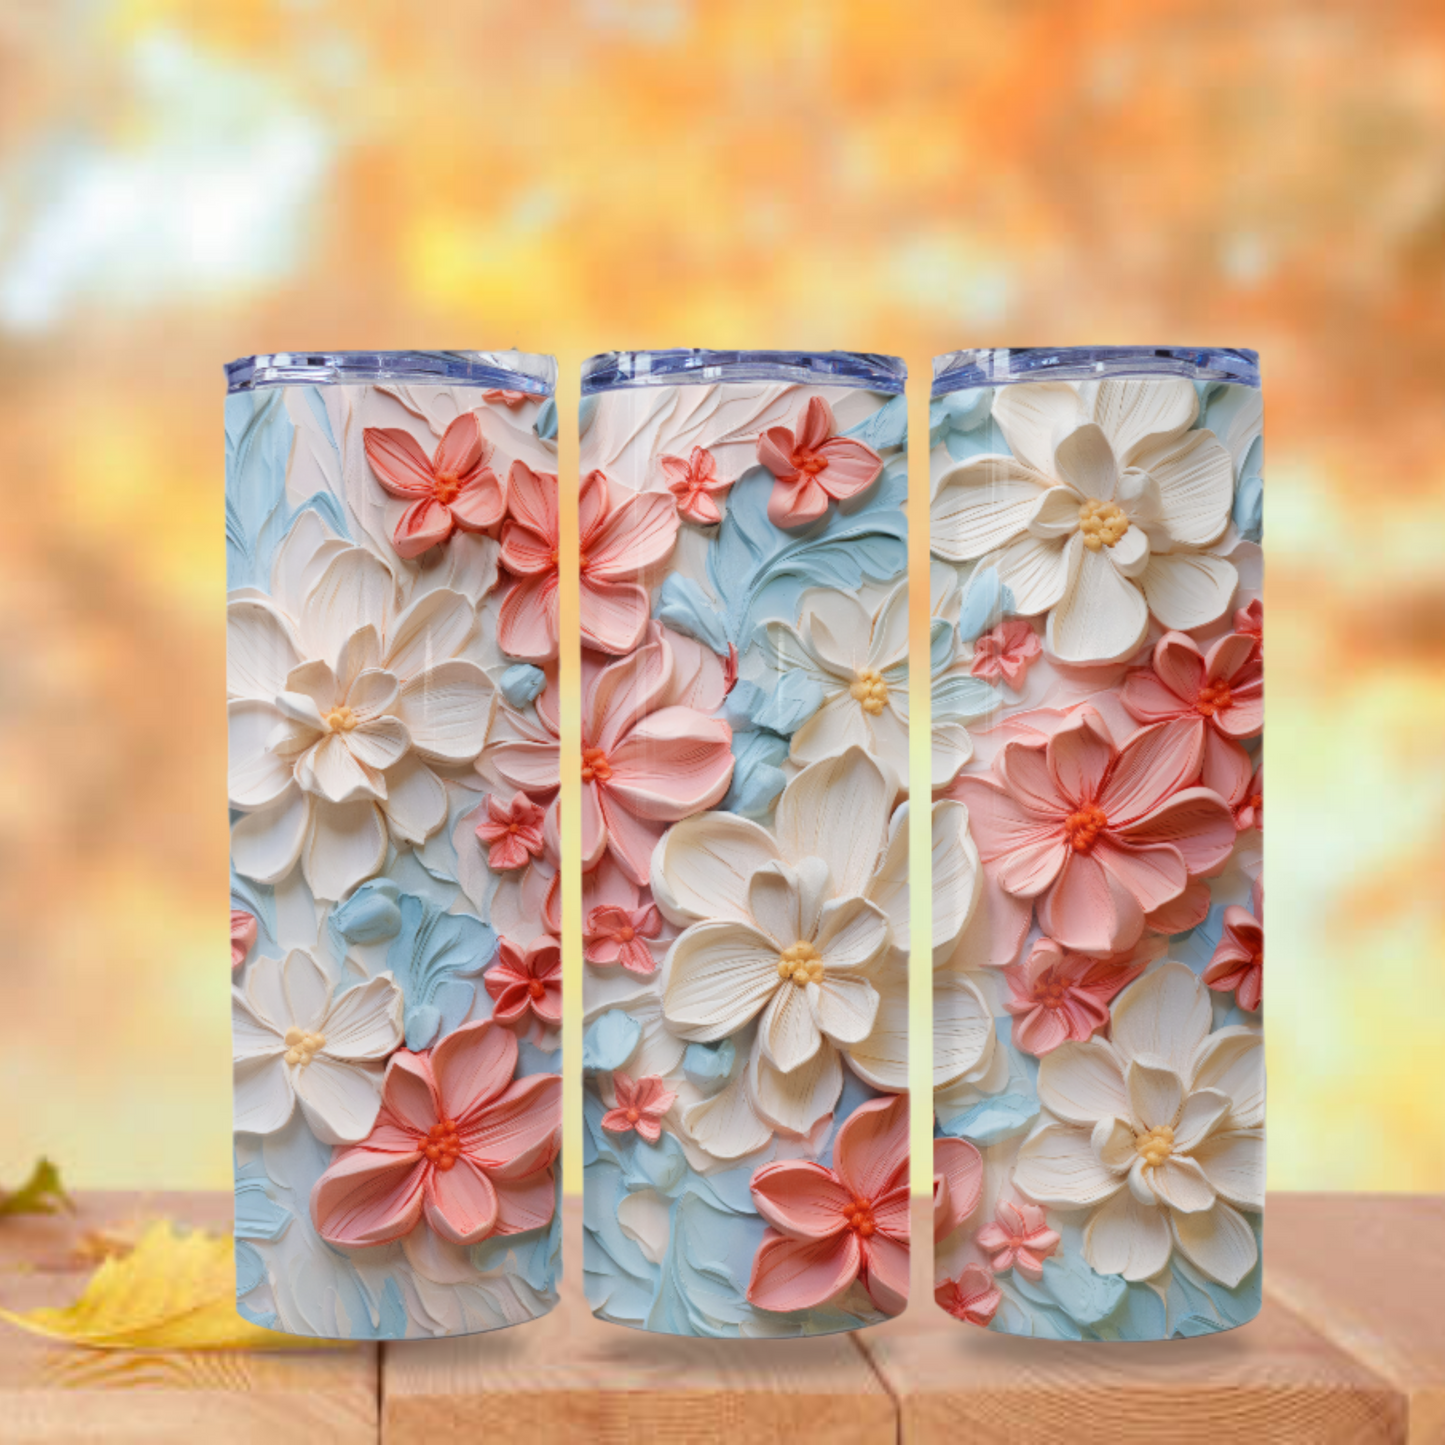 Floral Tumbler Wrap Design 20z Tumbler Digital Download PNG Sublimation Tumbler Wrap Floral PNG Canvas Painting